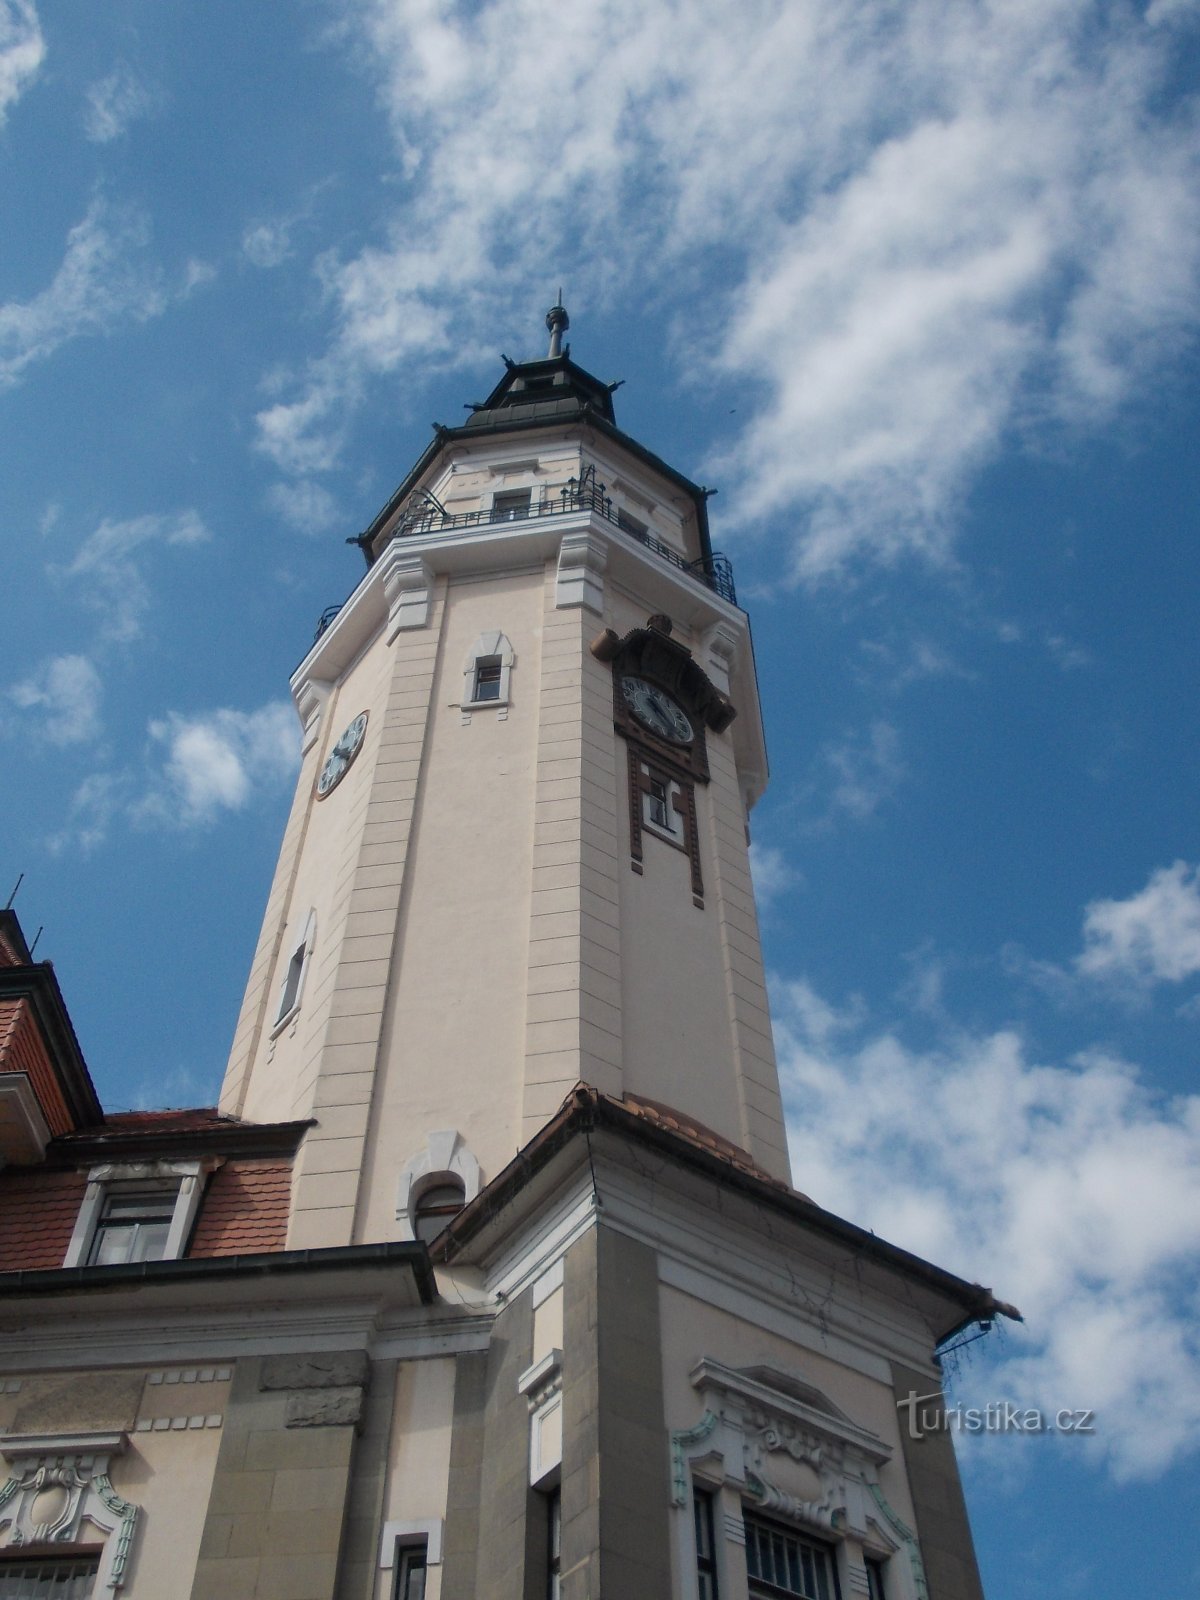 tháp của tòa thị chính cao 63 mét